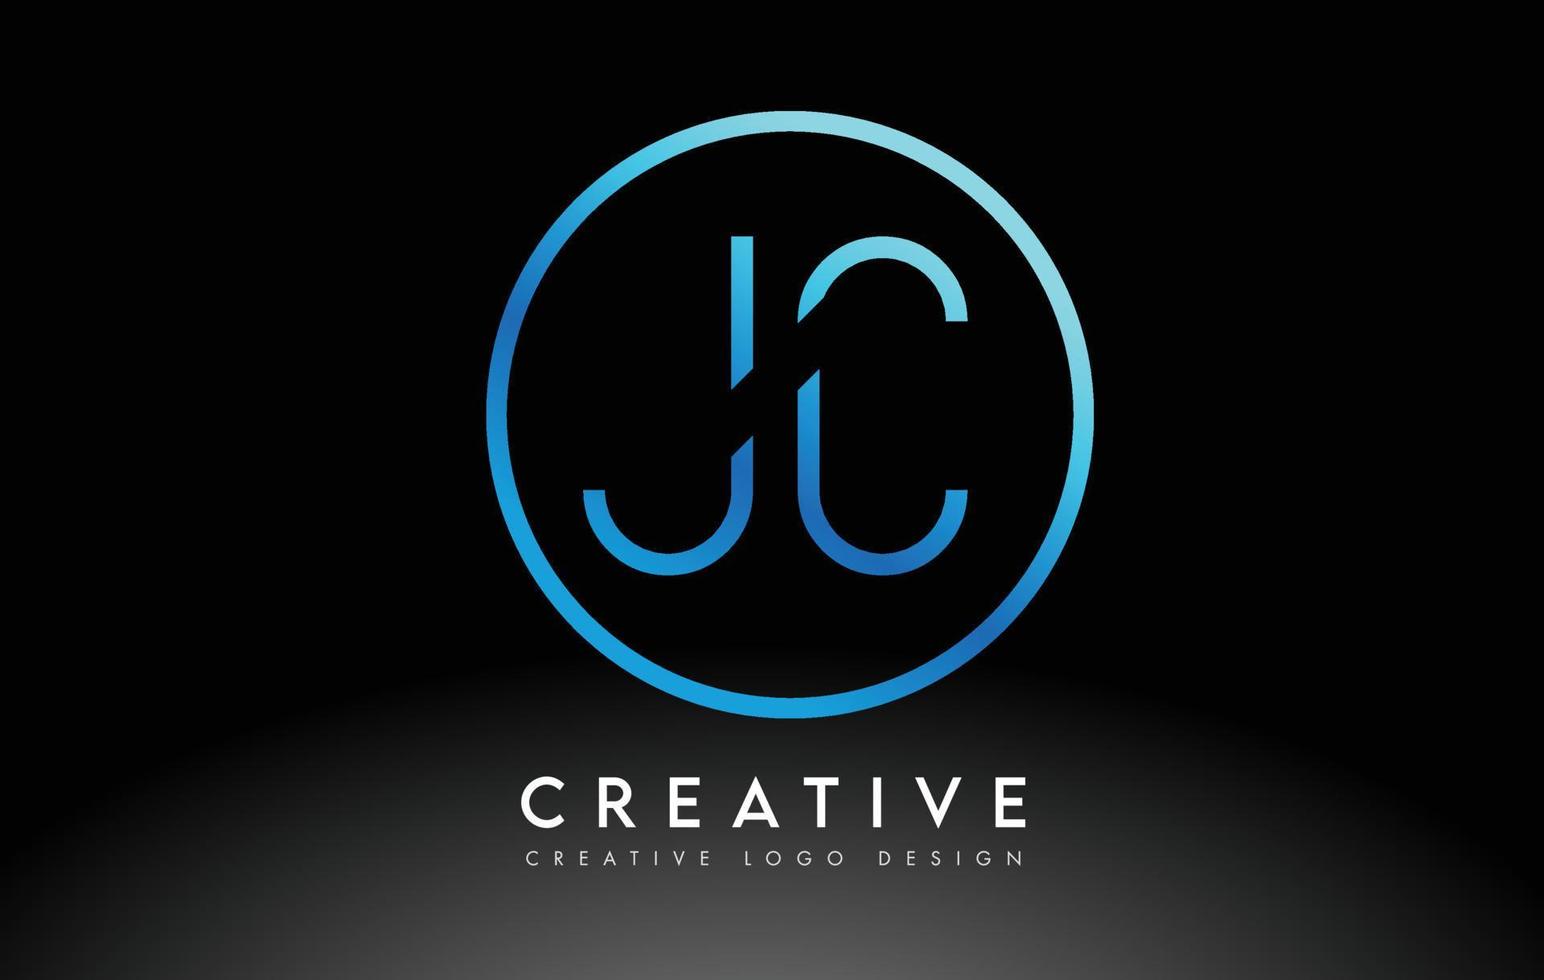 diseño de logotipo de letras jc azul neón delgado. concepto creativo simple carta limpia. vector